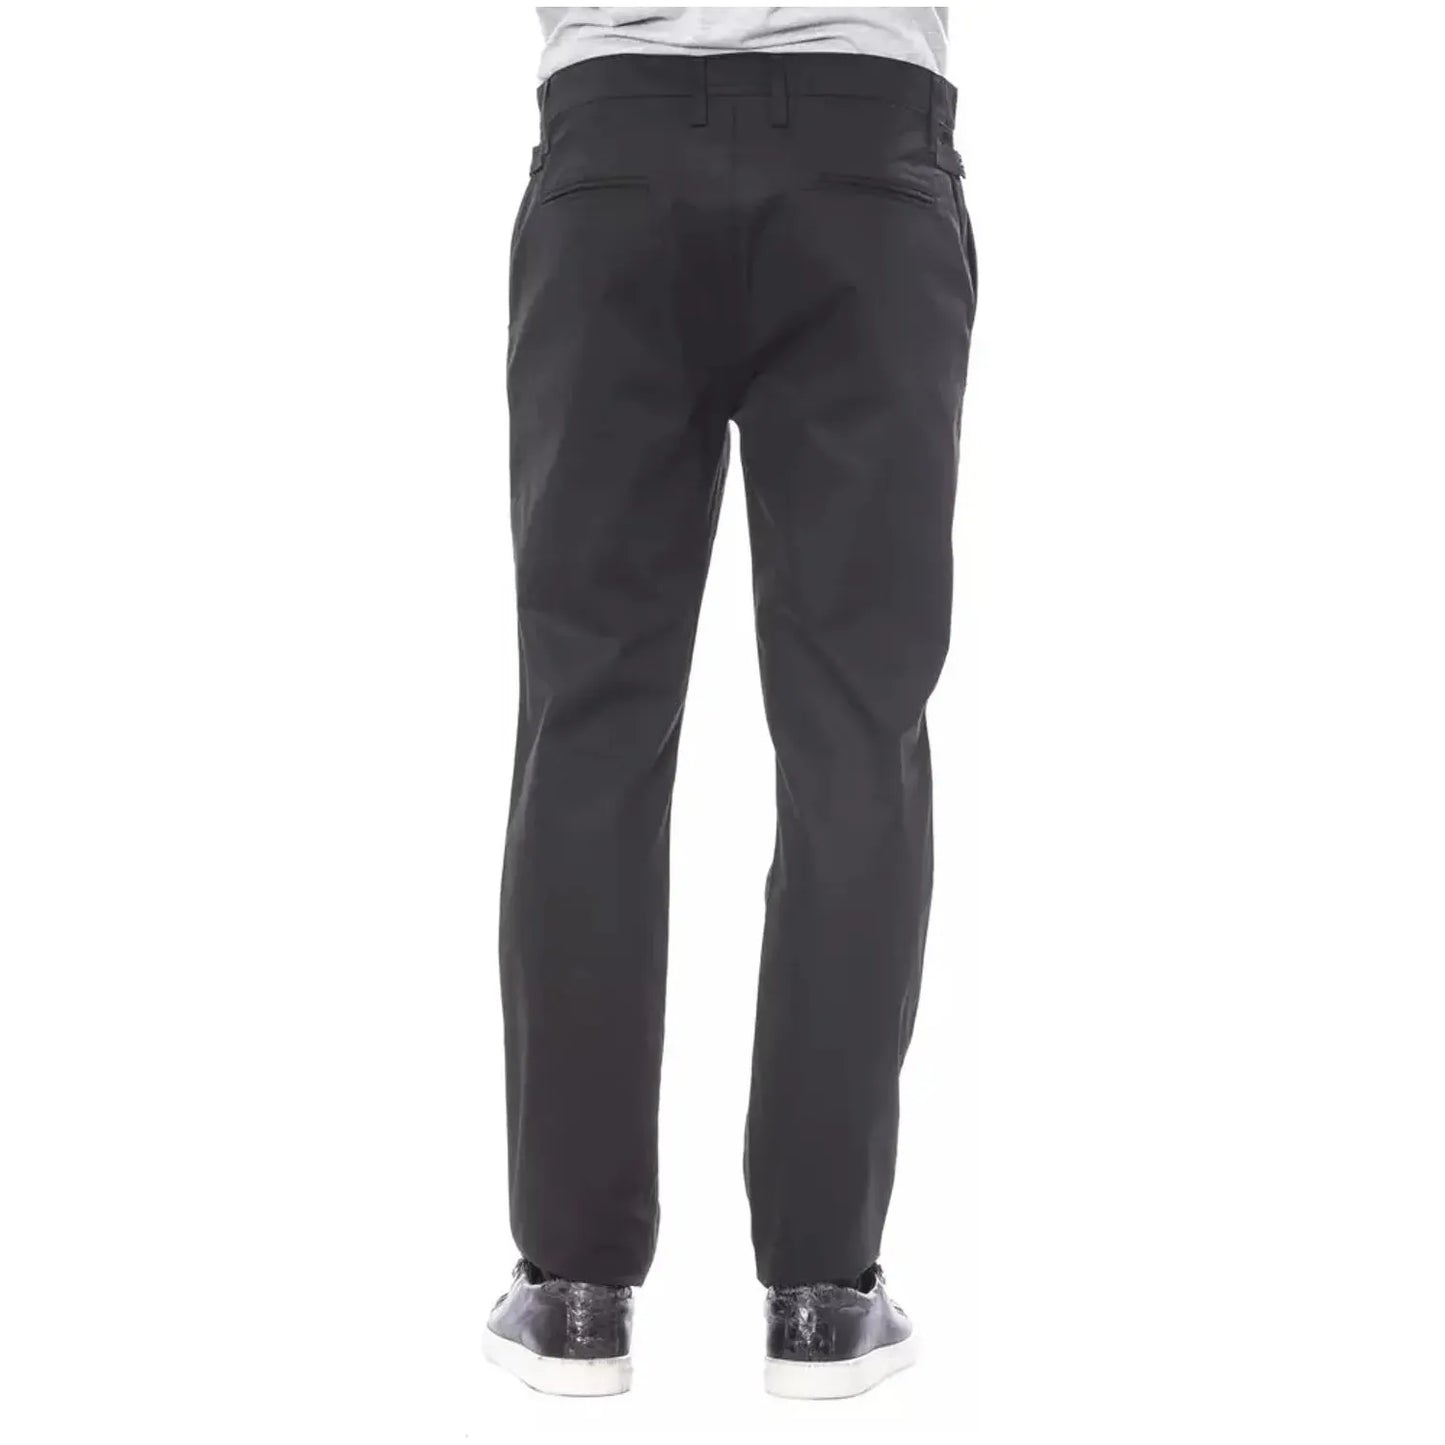 Verri Classic Black Cotton Pants black-cotton-jeans-pant-26 stock_product_image_18276_272742027-16-29e91cf1-187.webp